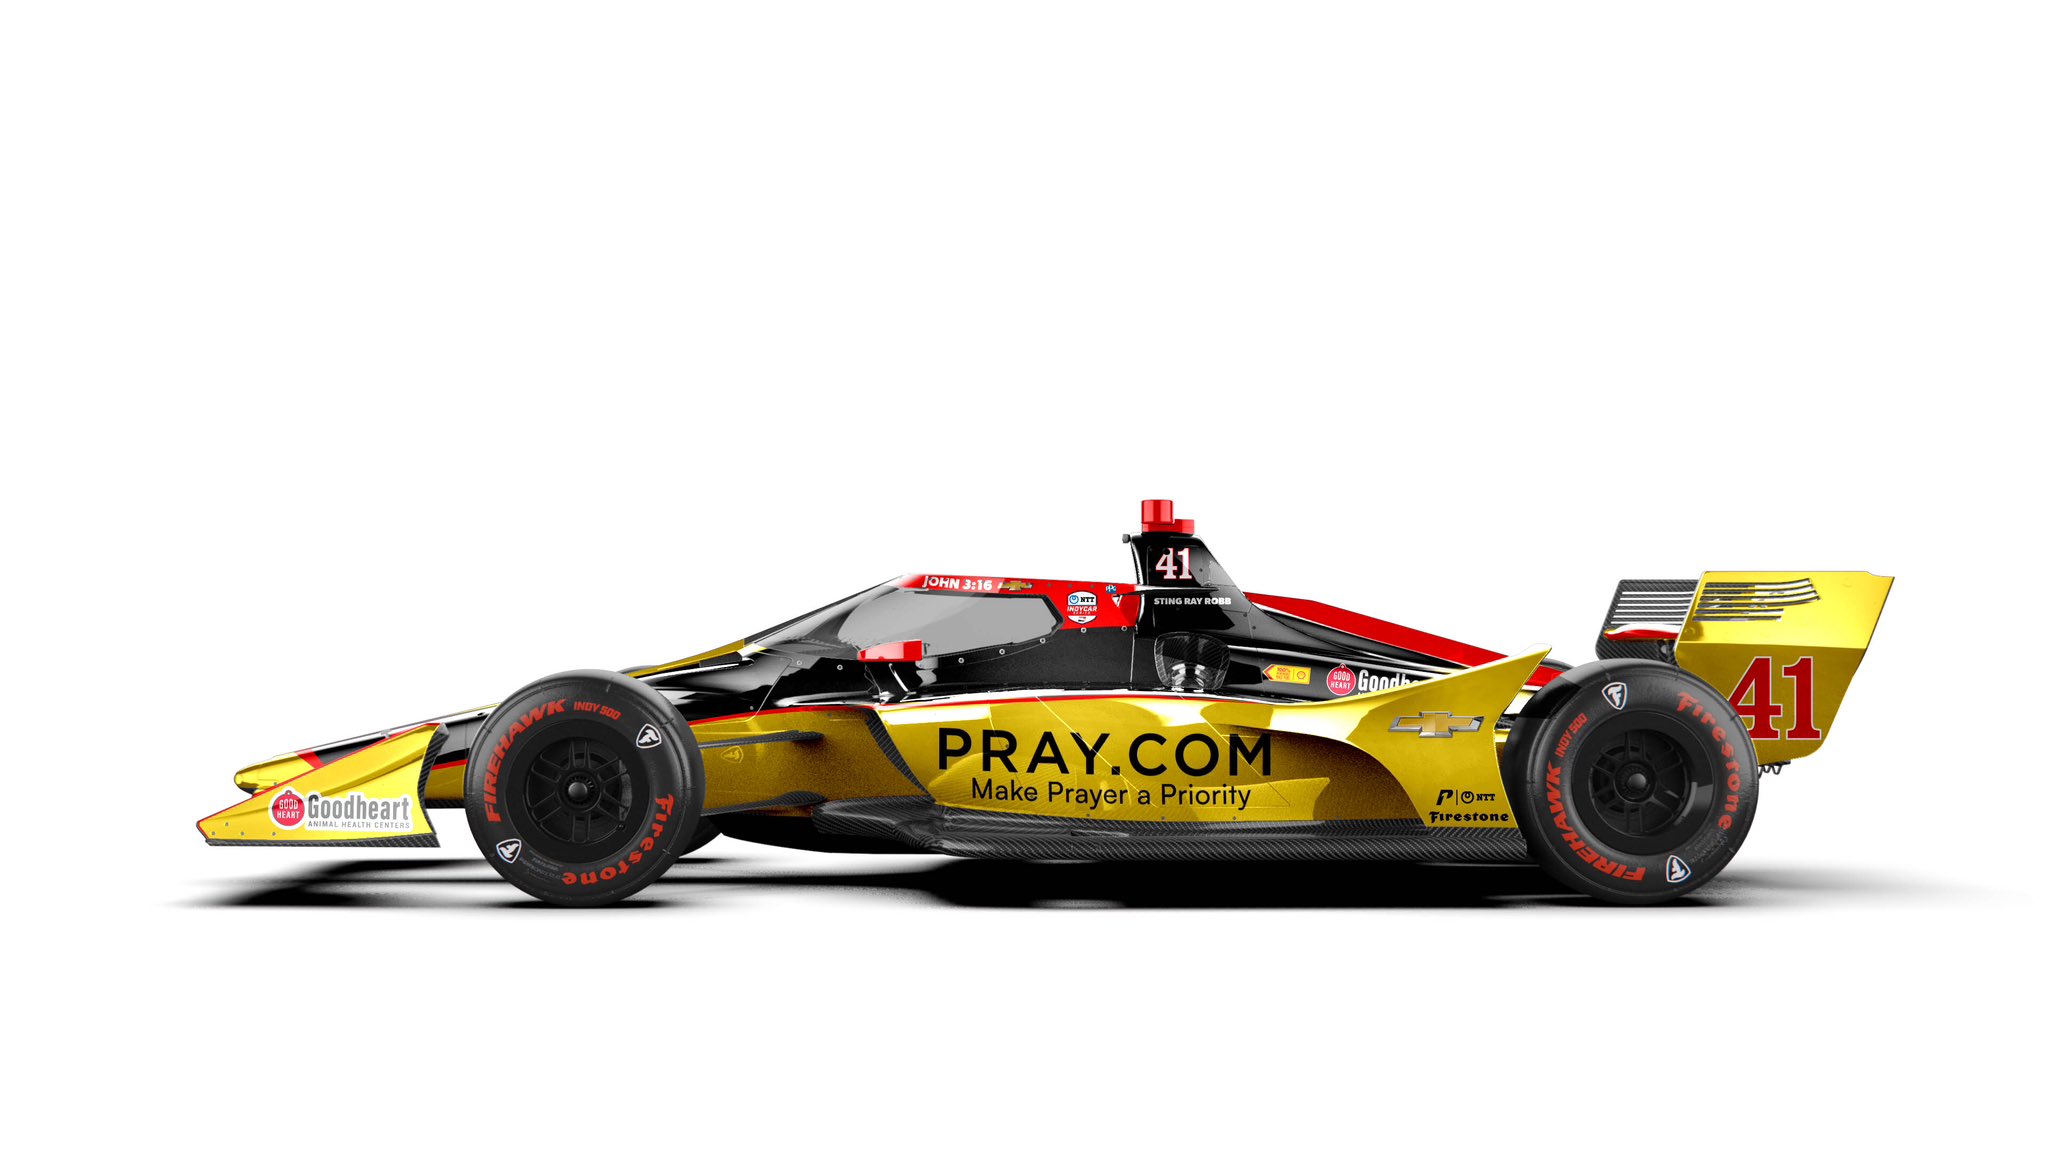 A világ vezető keresztény oldala, a Pray.com lesz az IndyCar legmenőbb nevű versenyzőjének idei főszponzora